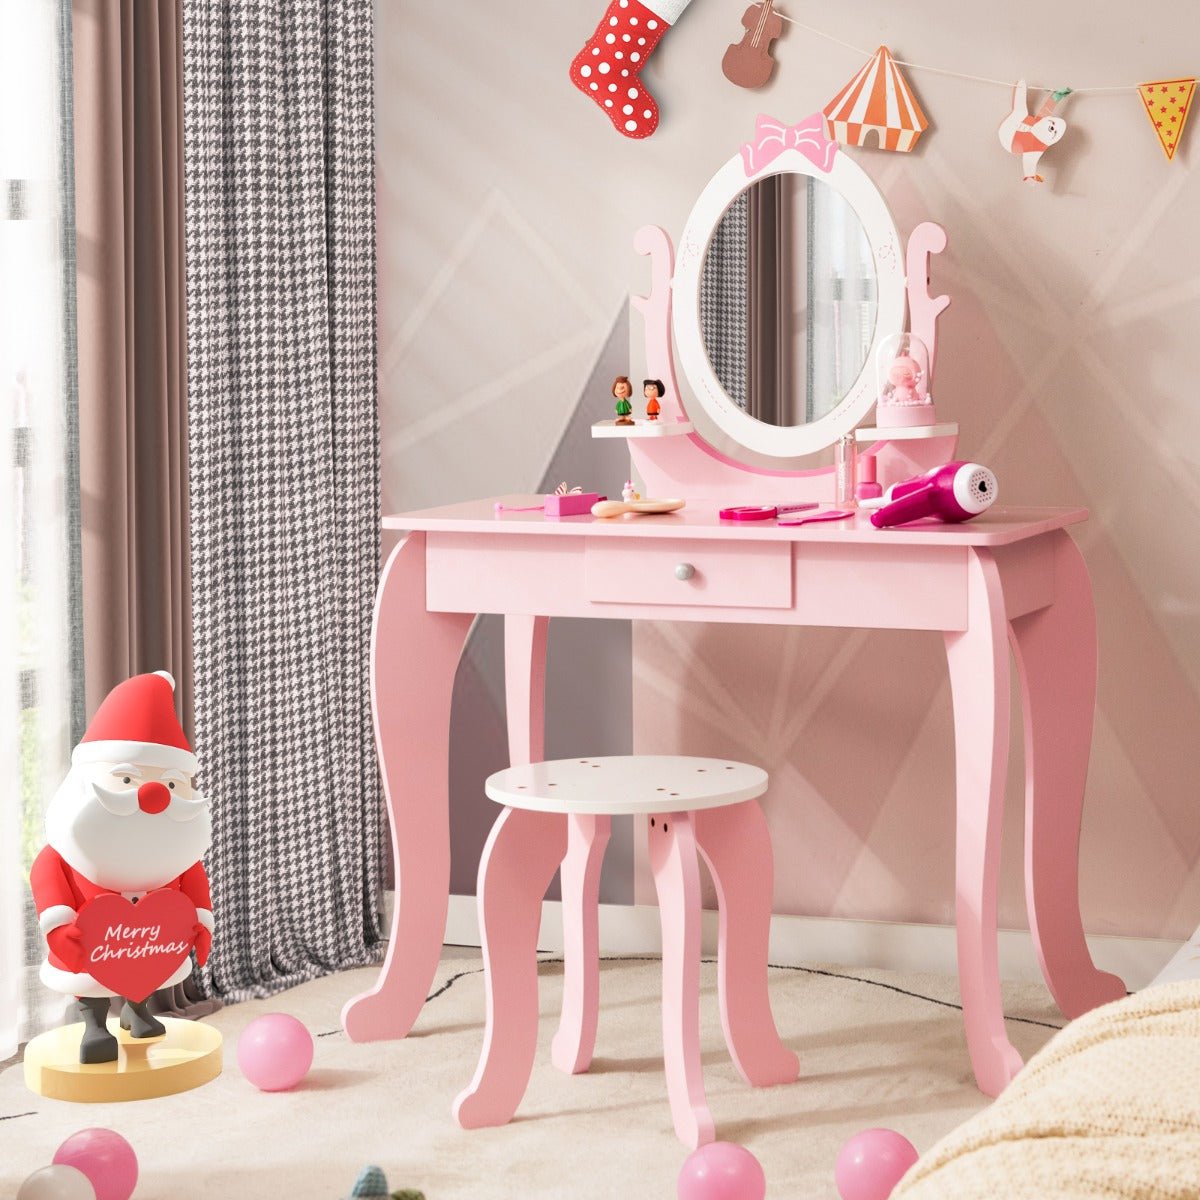 Nurturing Creativity: Children's Vanity Table Set with Adjustable Mirror